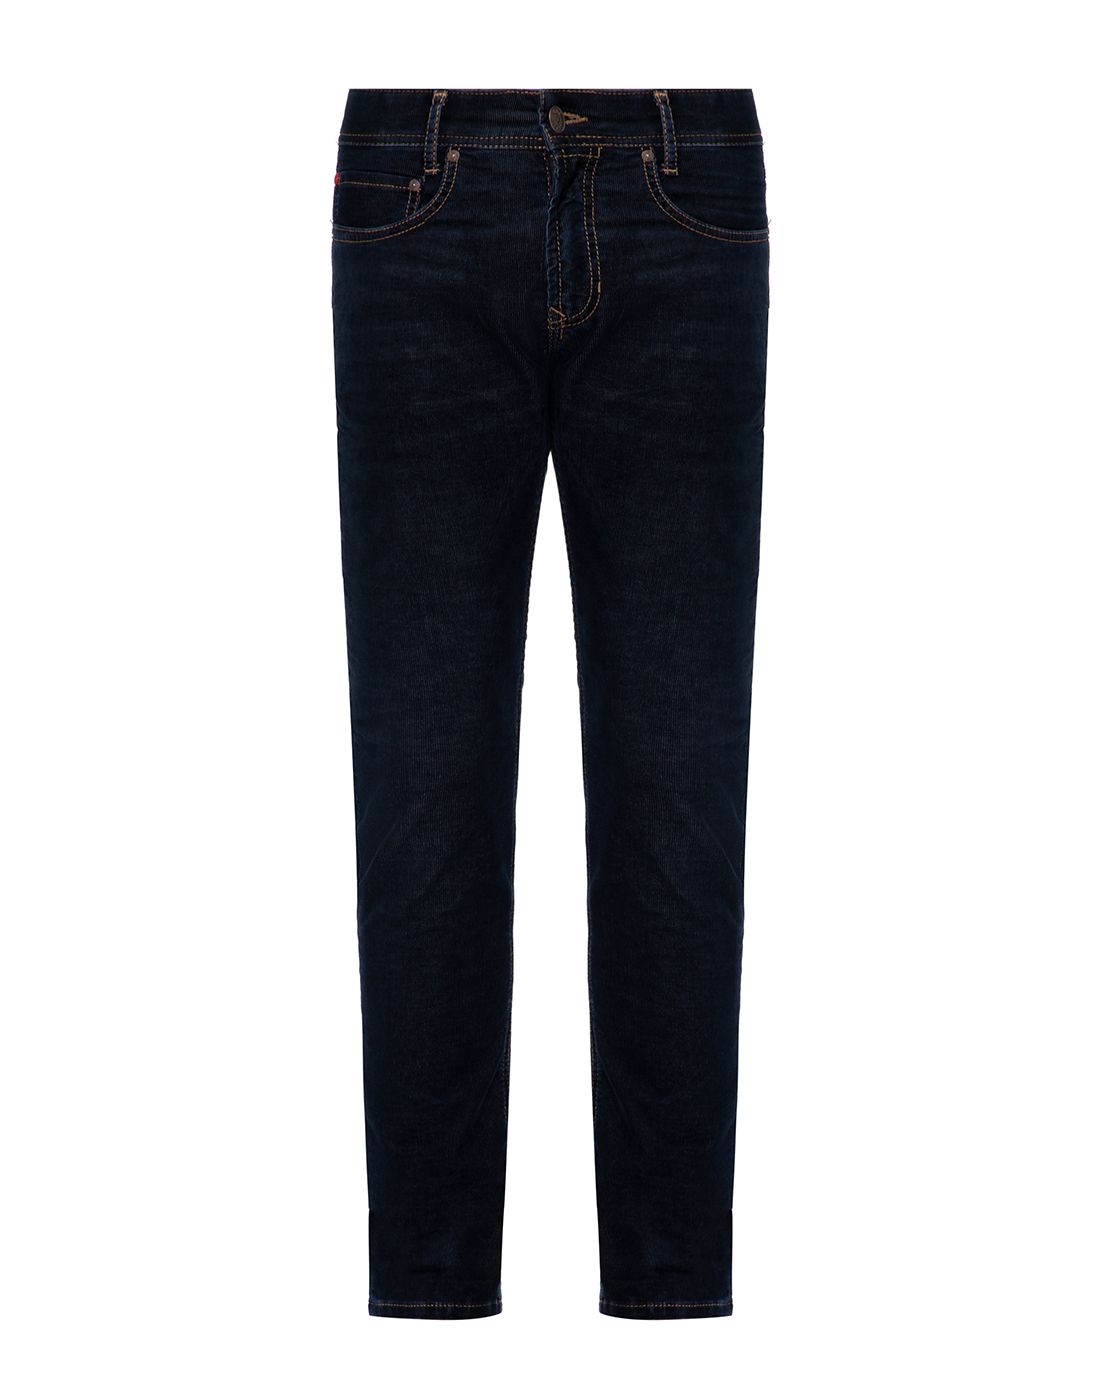 Мужские темно-синие вельветовые джинсы MAC S0518 00 0620 199-1